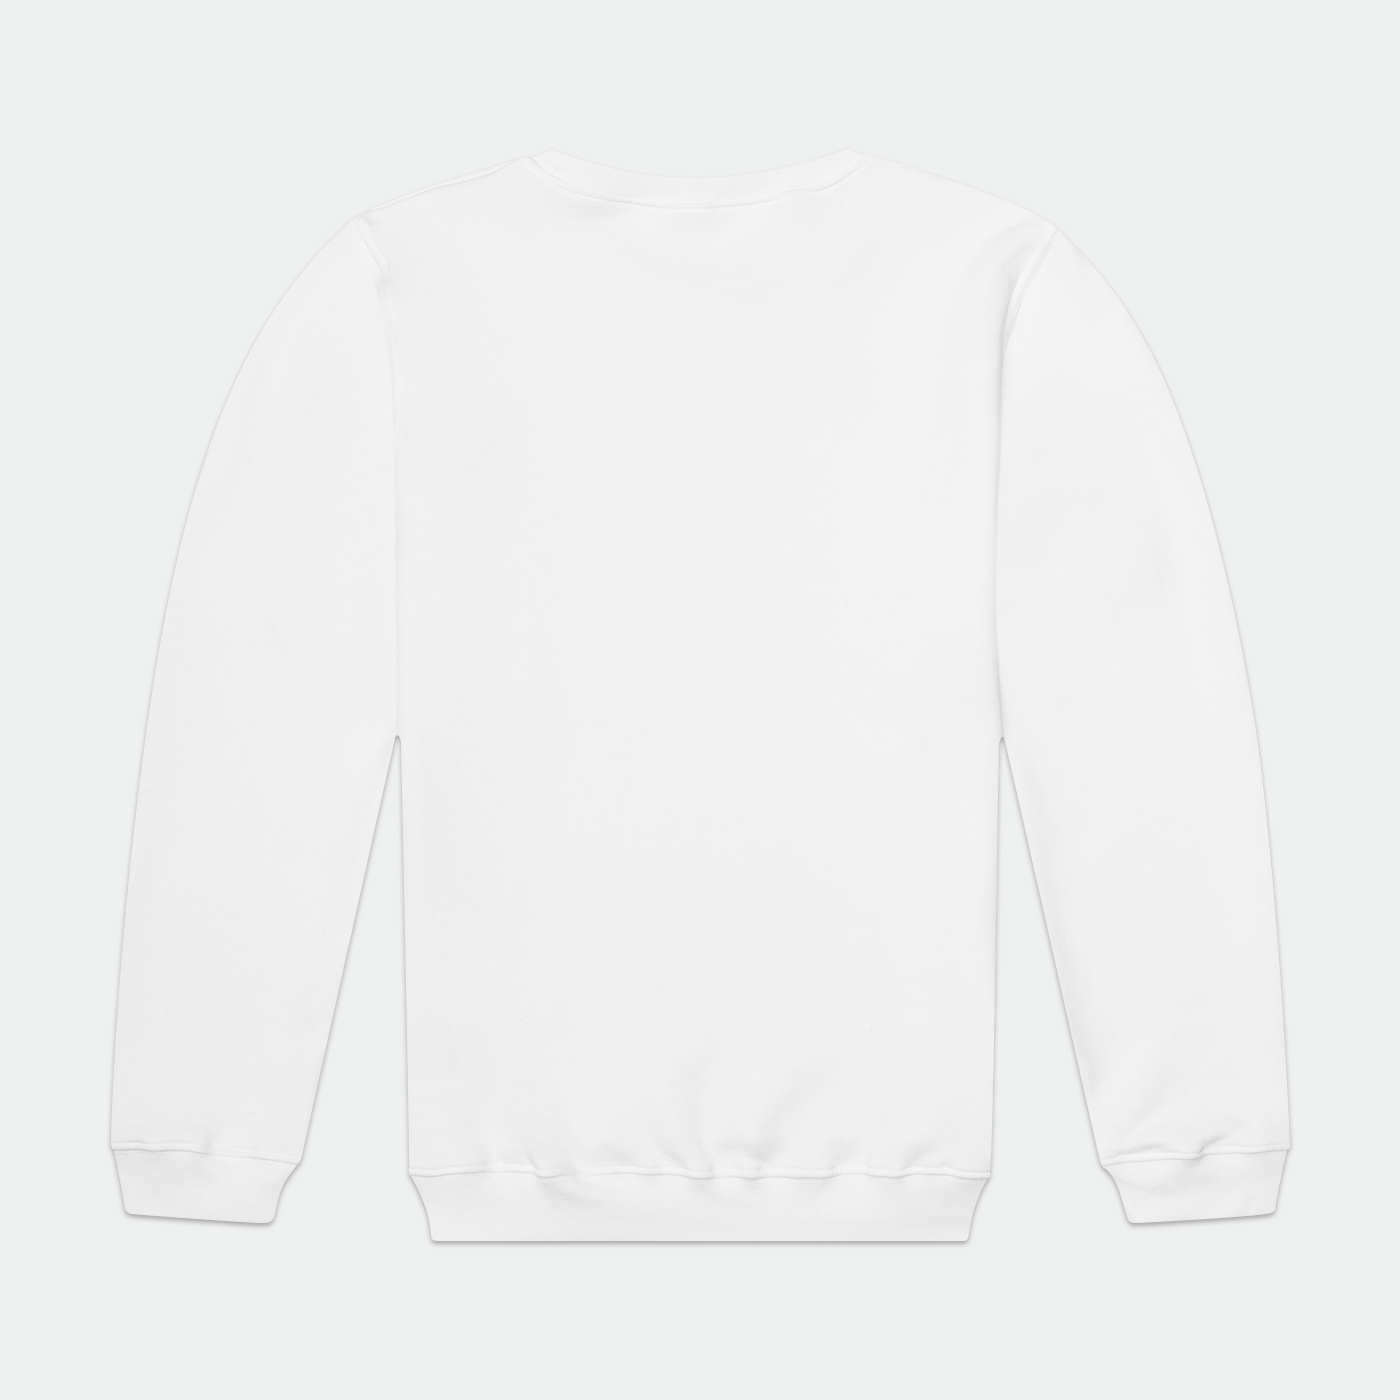 Honey Badgers LC Adult Premium Sweatshirt Signature Lacrosse